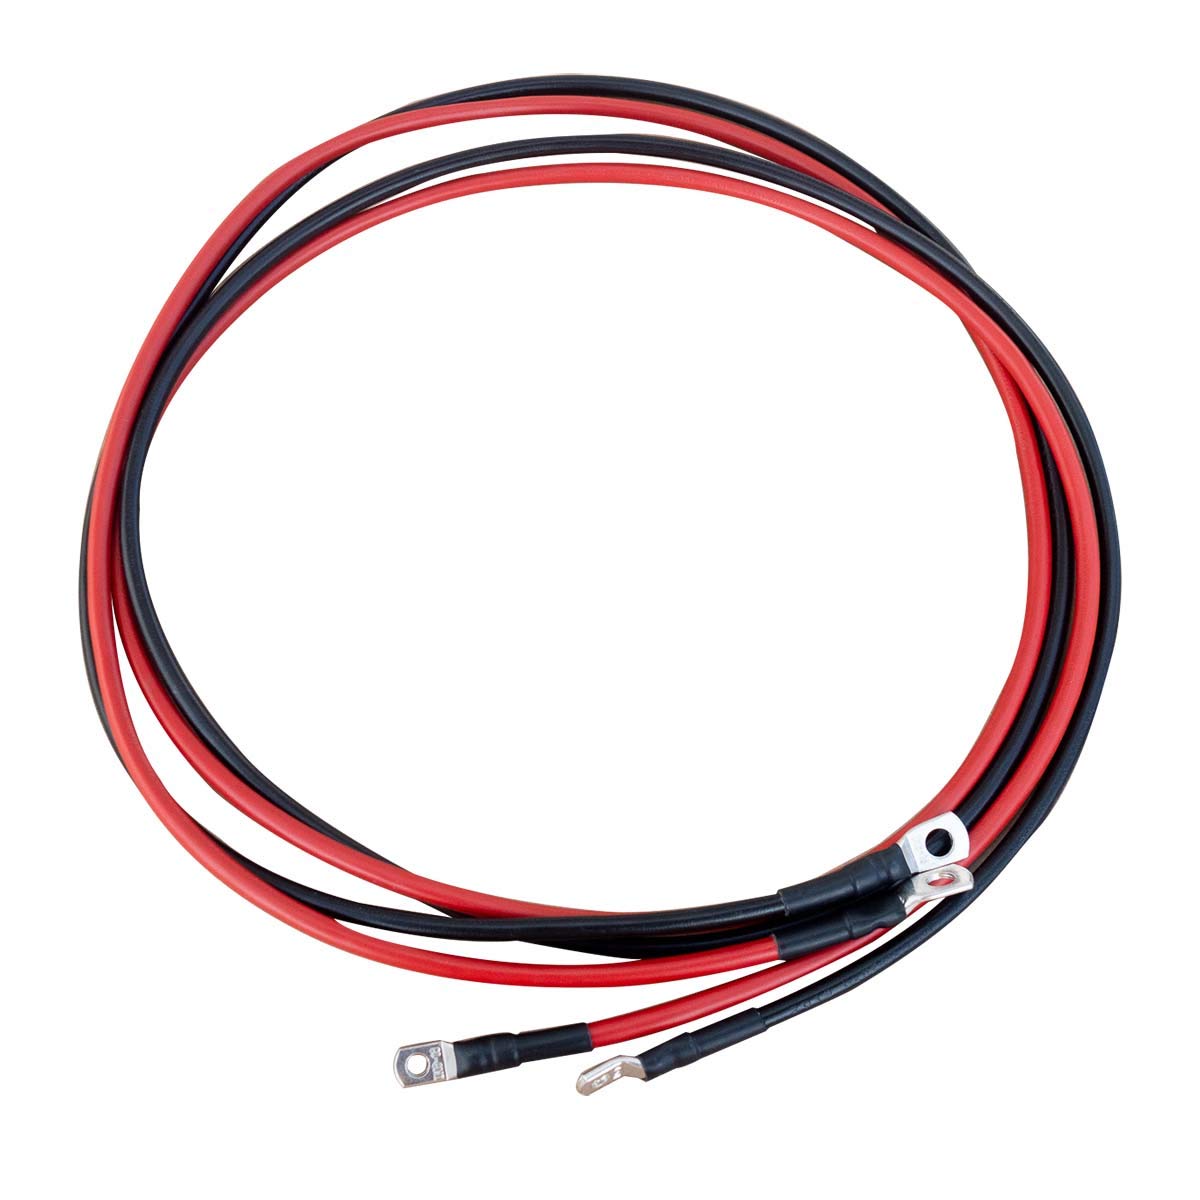 ECTIVE Wechselrichter-Kabel – M6/M8, 3m, rot/schwarz, Kupfer, 16 mm² - Batteriekabel, Kabel-Satz, Kabel für Wechselrichter 300W mit Ringösen für 12V Batterie, Versorgungsbatterie, Autobatterie